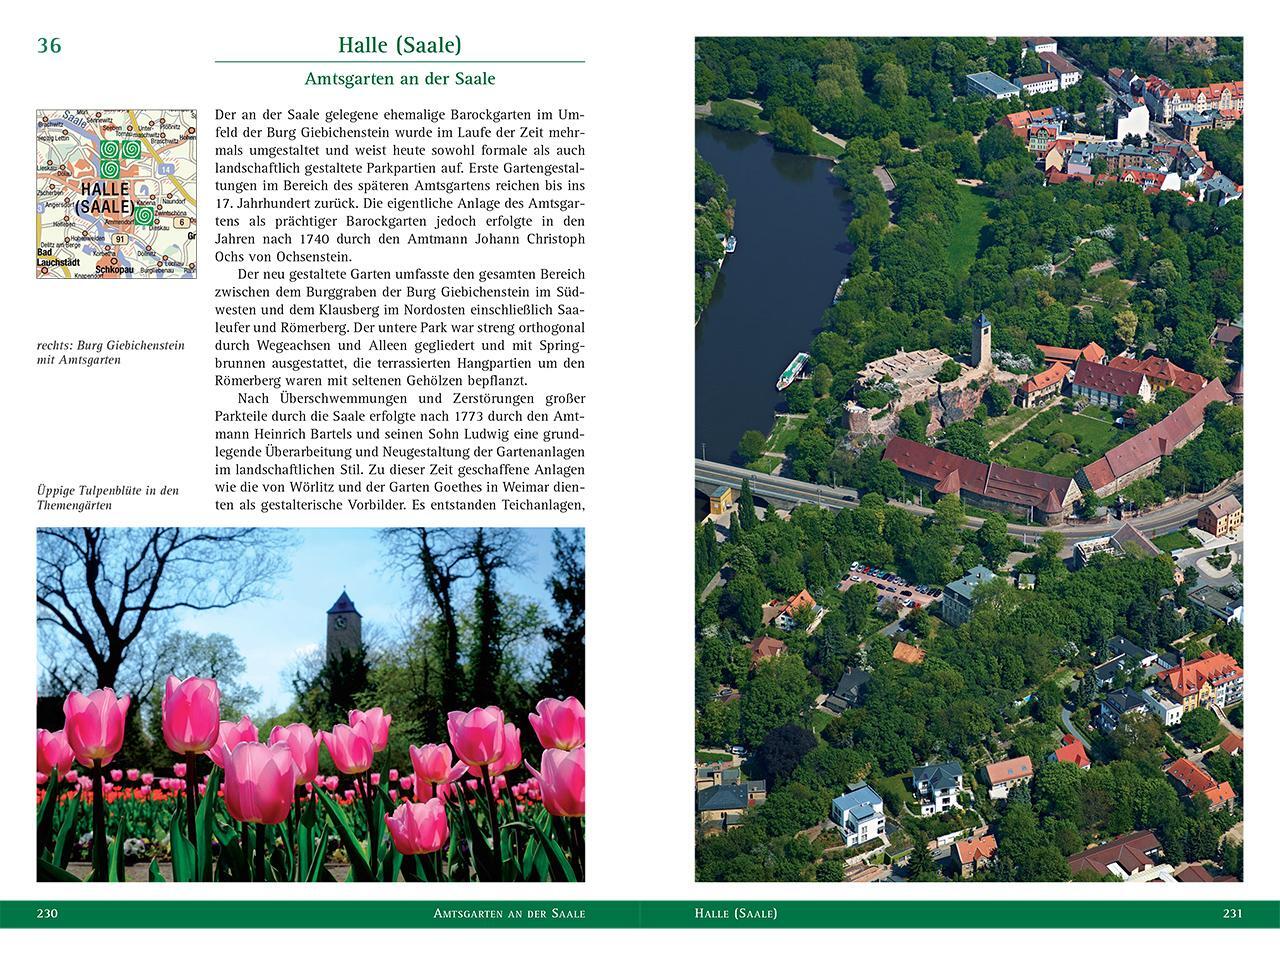 Bild: 9783899230017 | Gartenträume | Historische Parks in Sachsen-Anhalt | Anke Werner